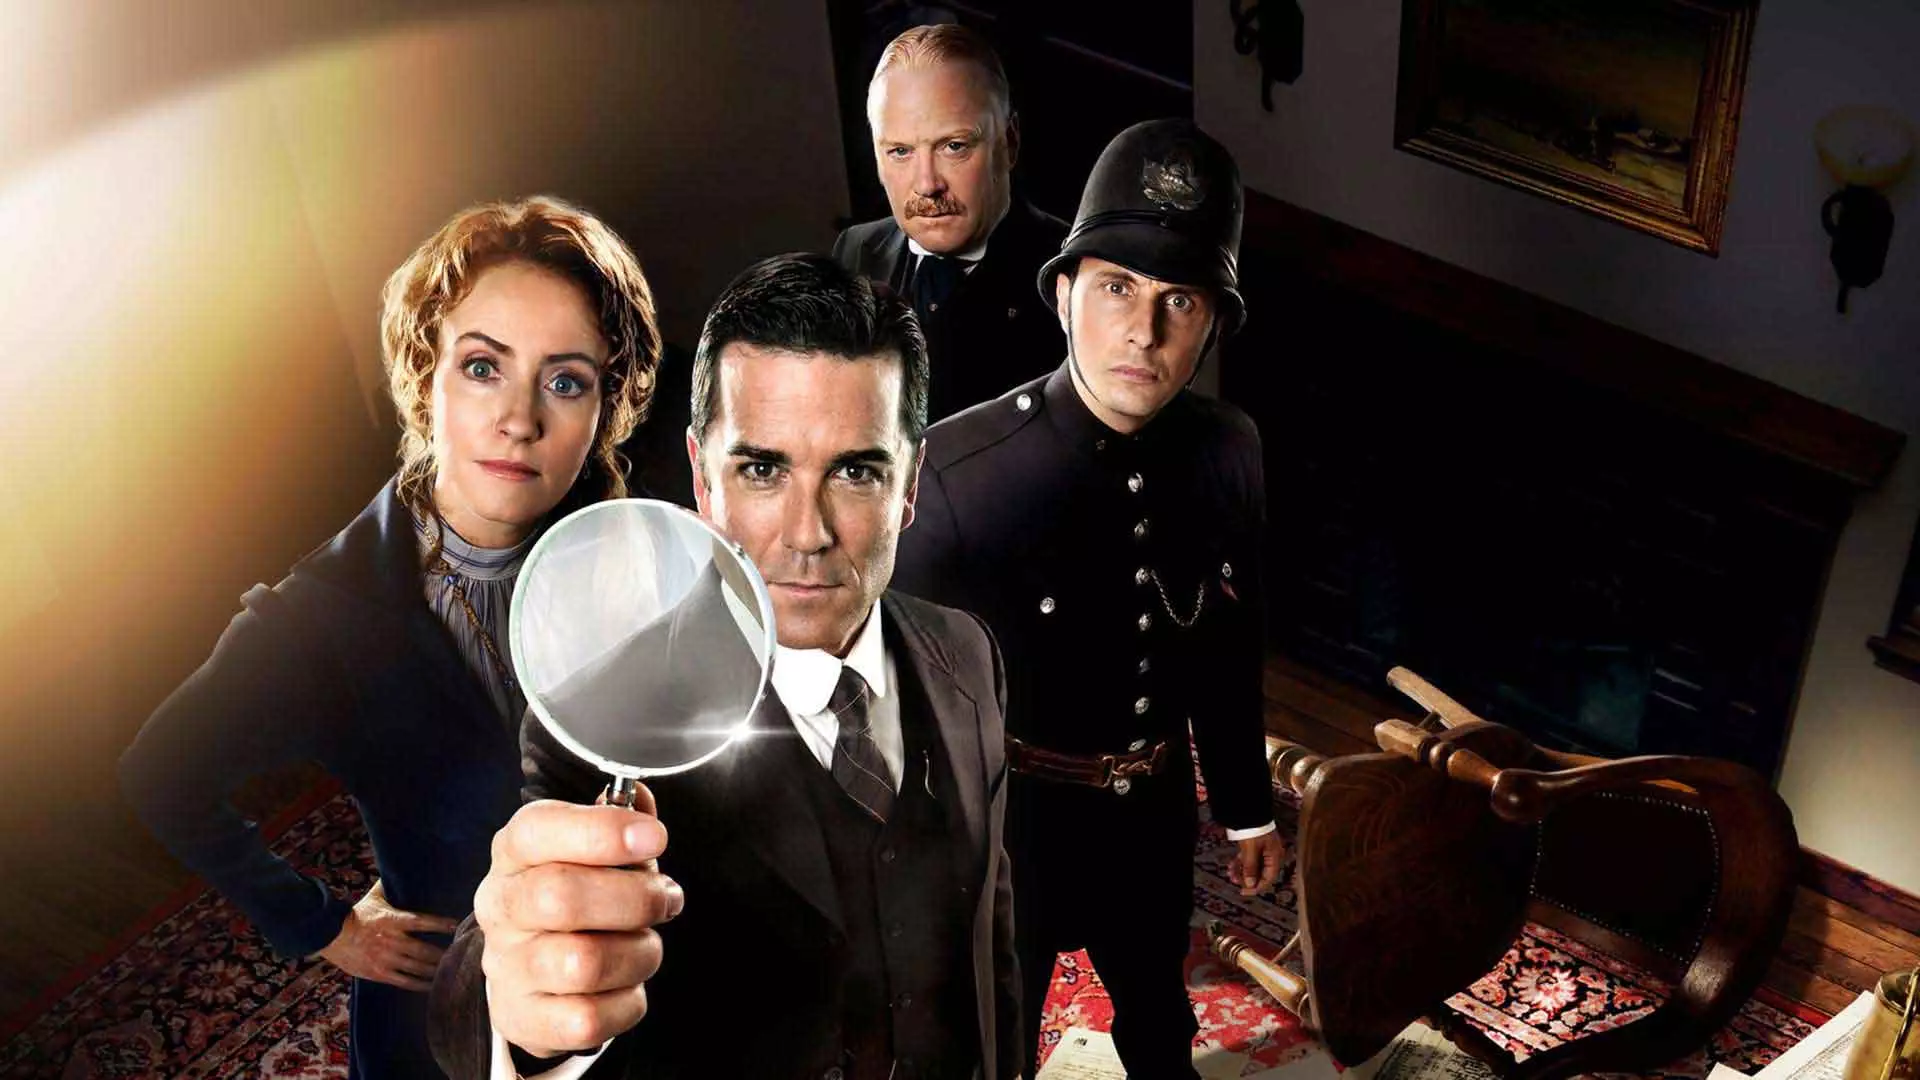 یانیک بیسون در نقش ویلیام مرداک در کنار جولیا آگدن، سروان کراپتری و رئیس پلیس براکنرید